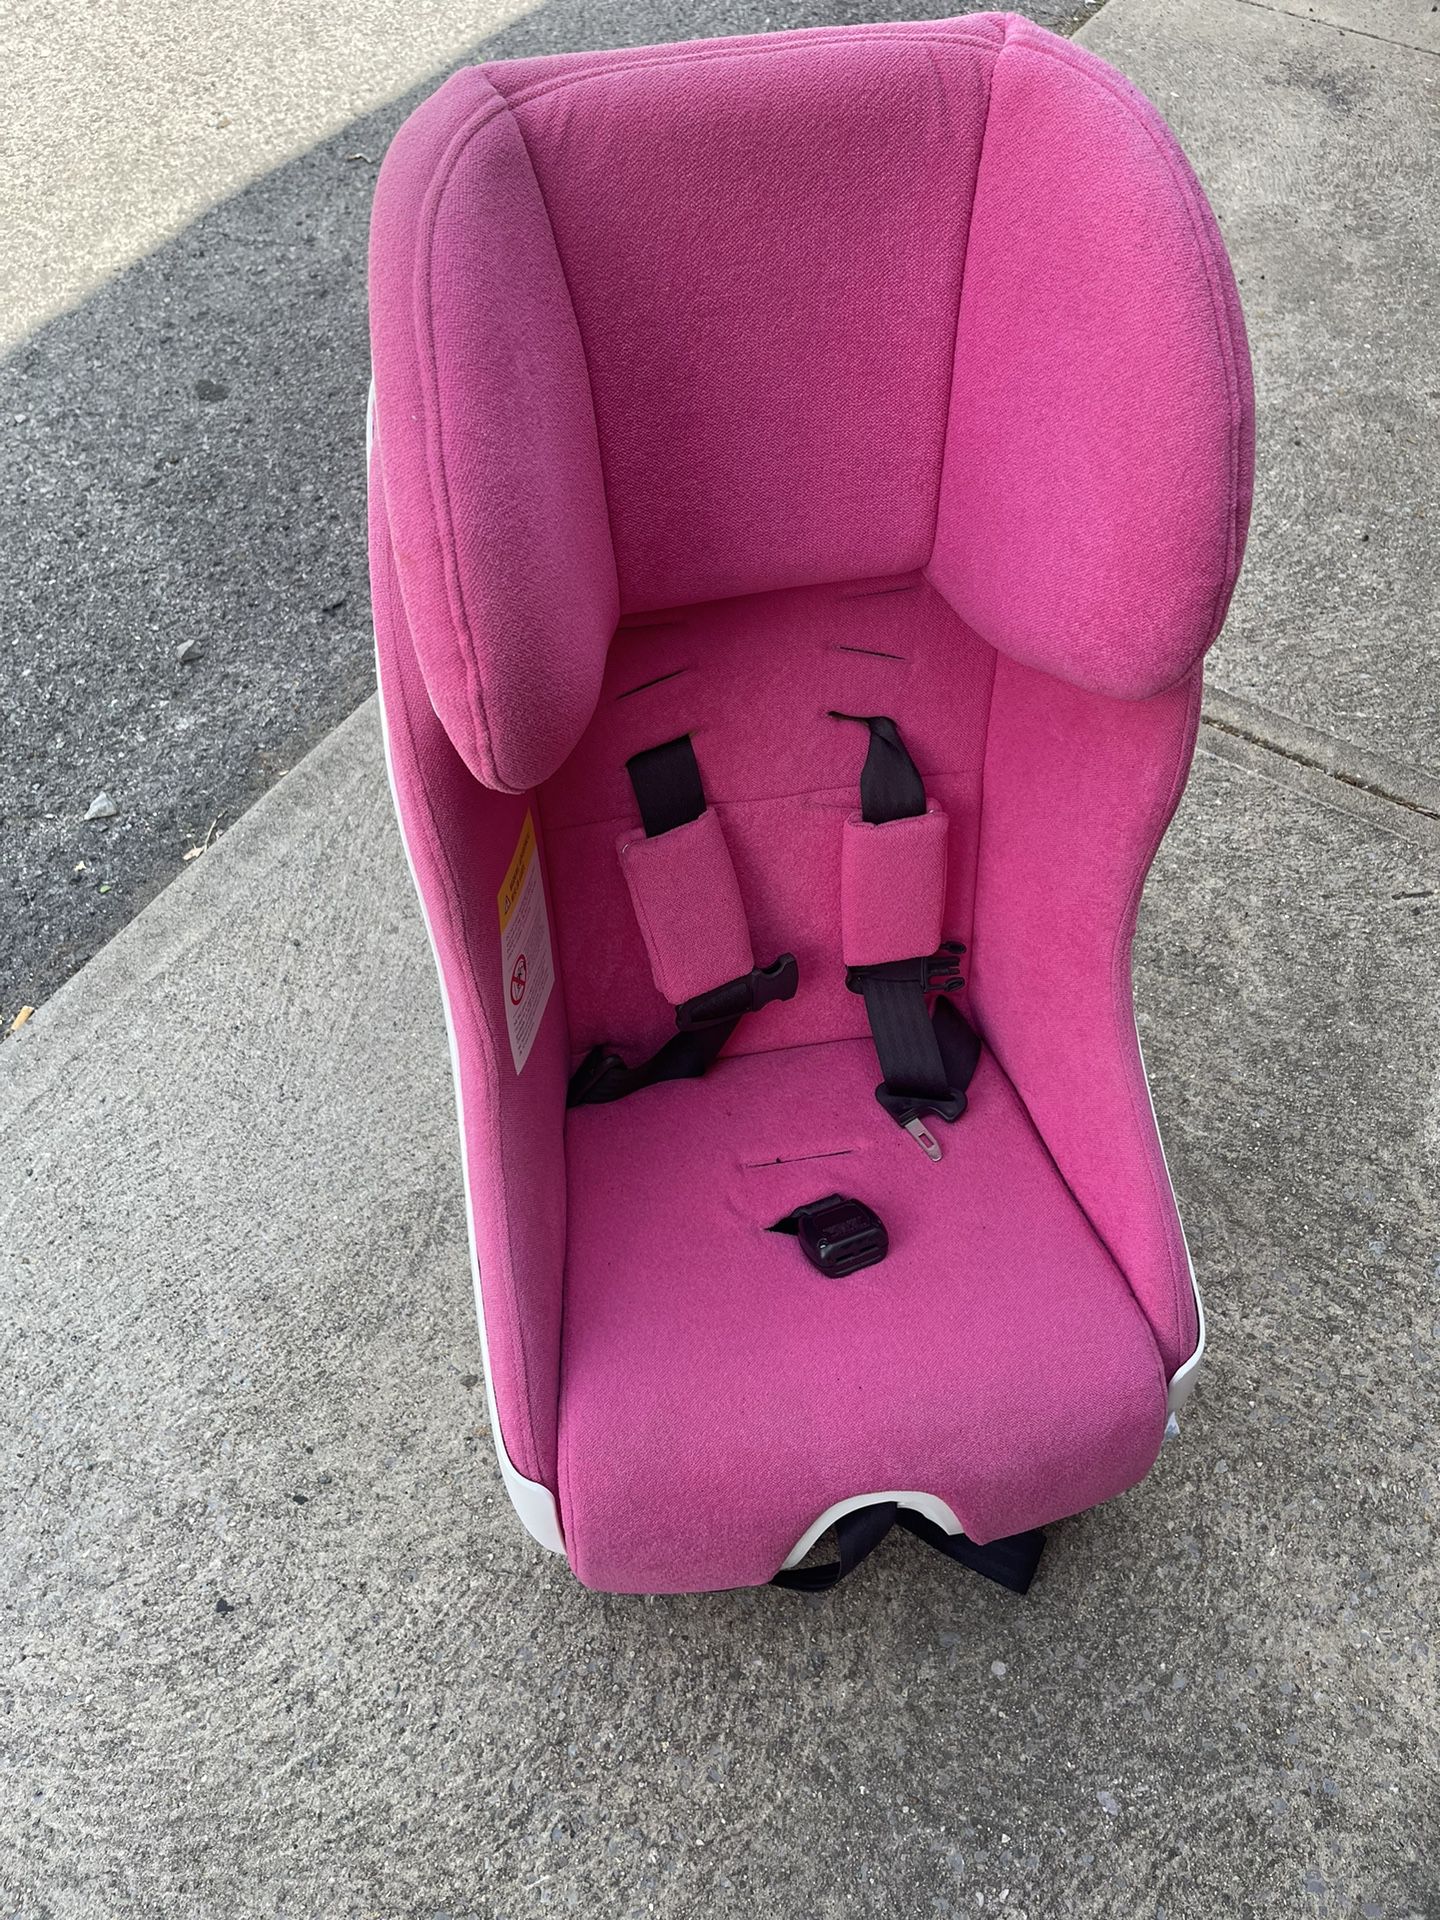 Clek Baby Car Sit Pink Kid